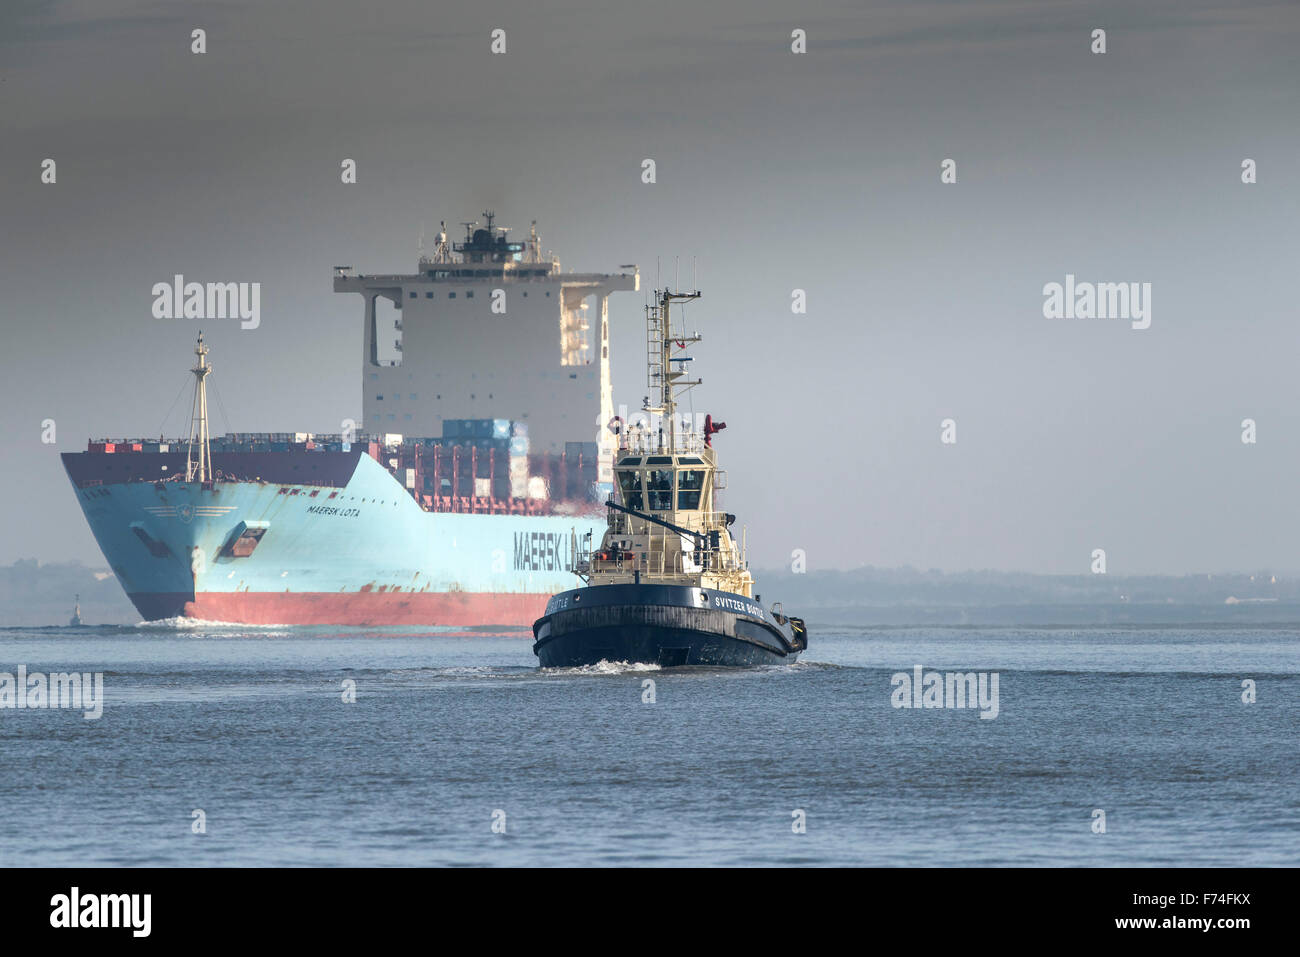 Il rimorchiatore Svitzer Bootle accompagna il contenitore nave Maersk Lota come lei cuoce a vapore più a monte lungo il fiume Tamigi. Foto Stock